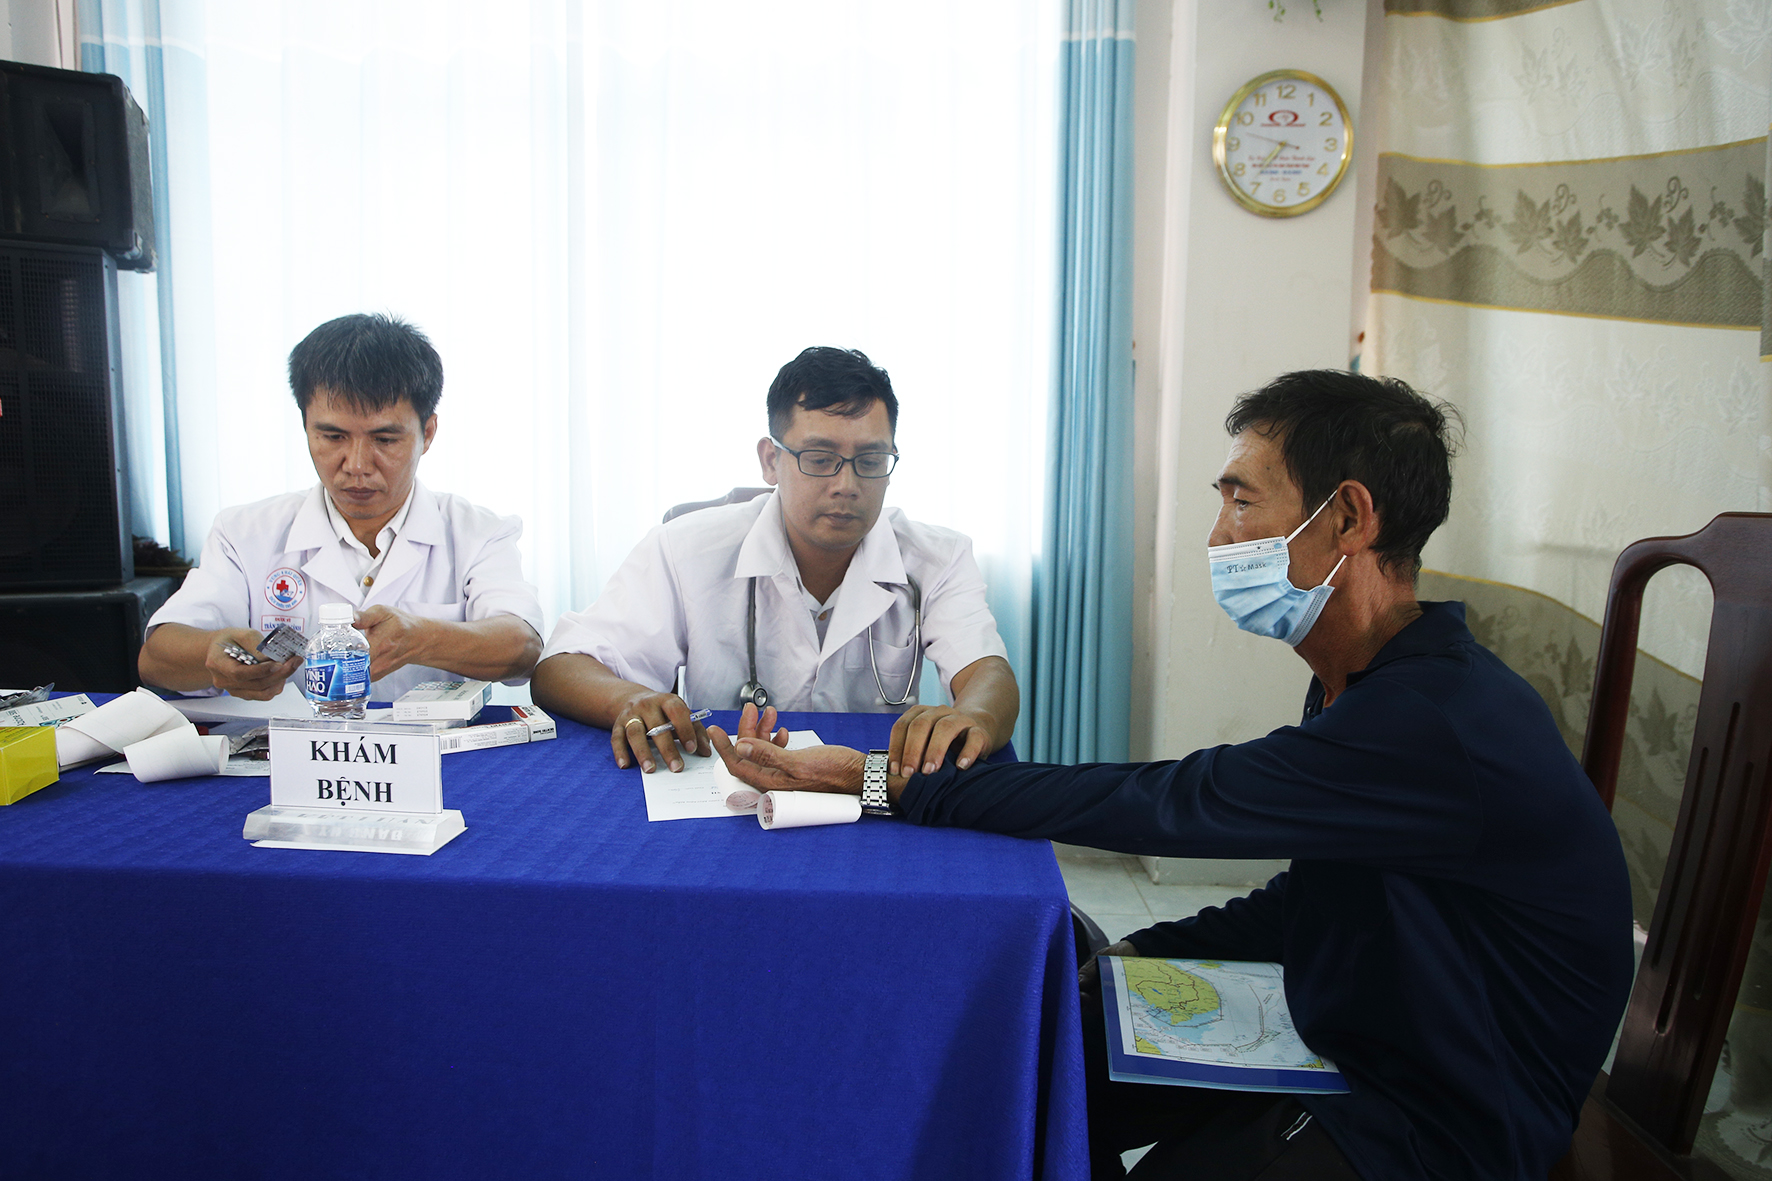 Bộ Tư lệnh Vùng 4 Hải quân đã tổ chức thăm khám sức khỏe, cấp thuốc miễn phí cho gần 100 bà con ngư dân. Ảnh: San Hô